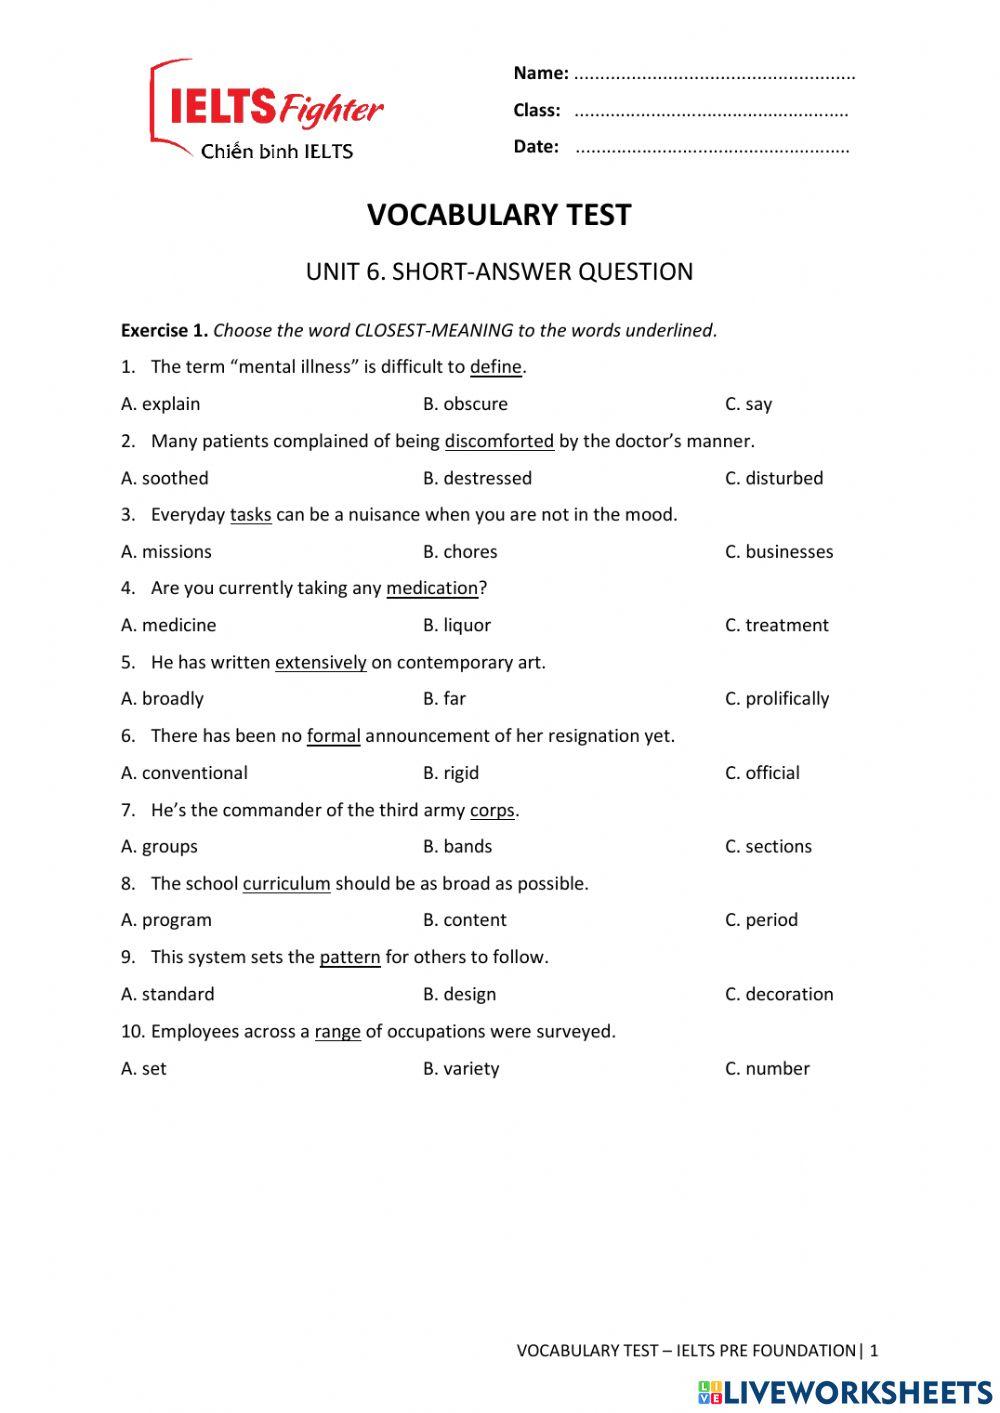 VOCAB TEST 6. UNIT 6. Short-answer Question